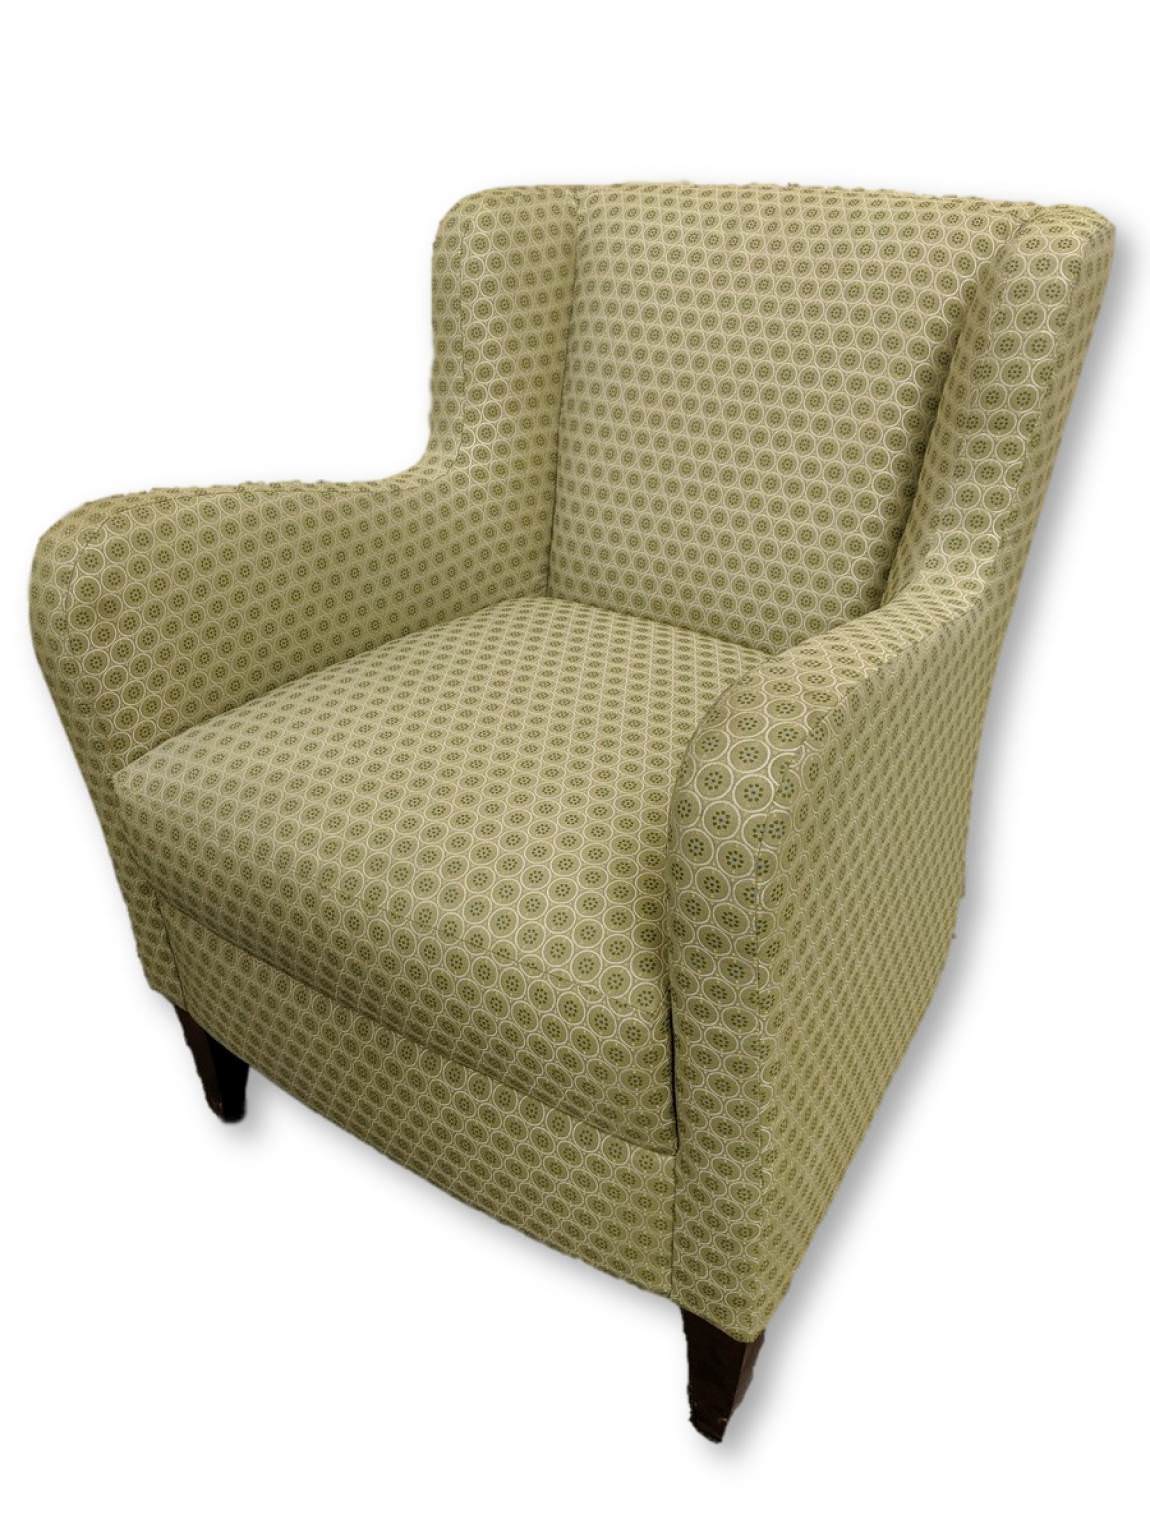 Bernhardt Light Green Fabric Club Chair